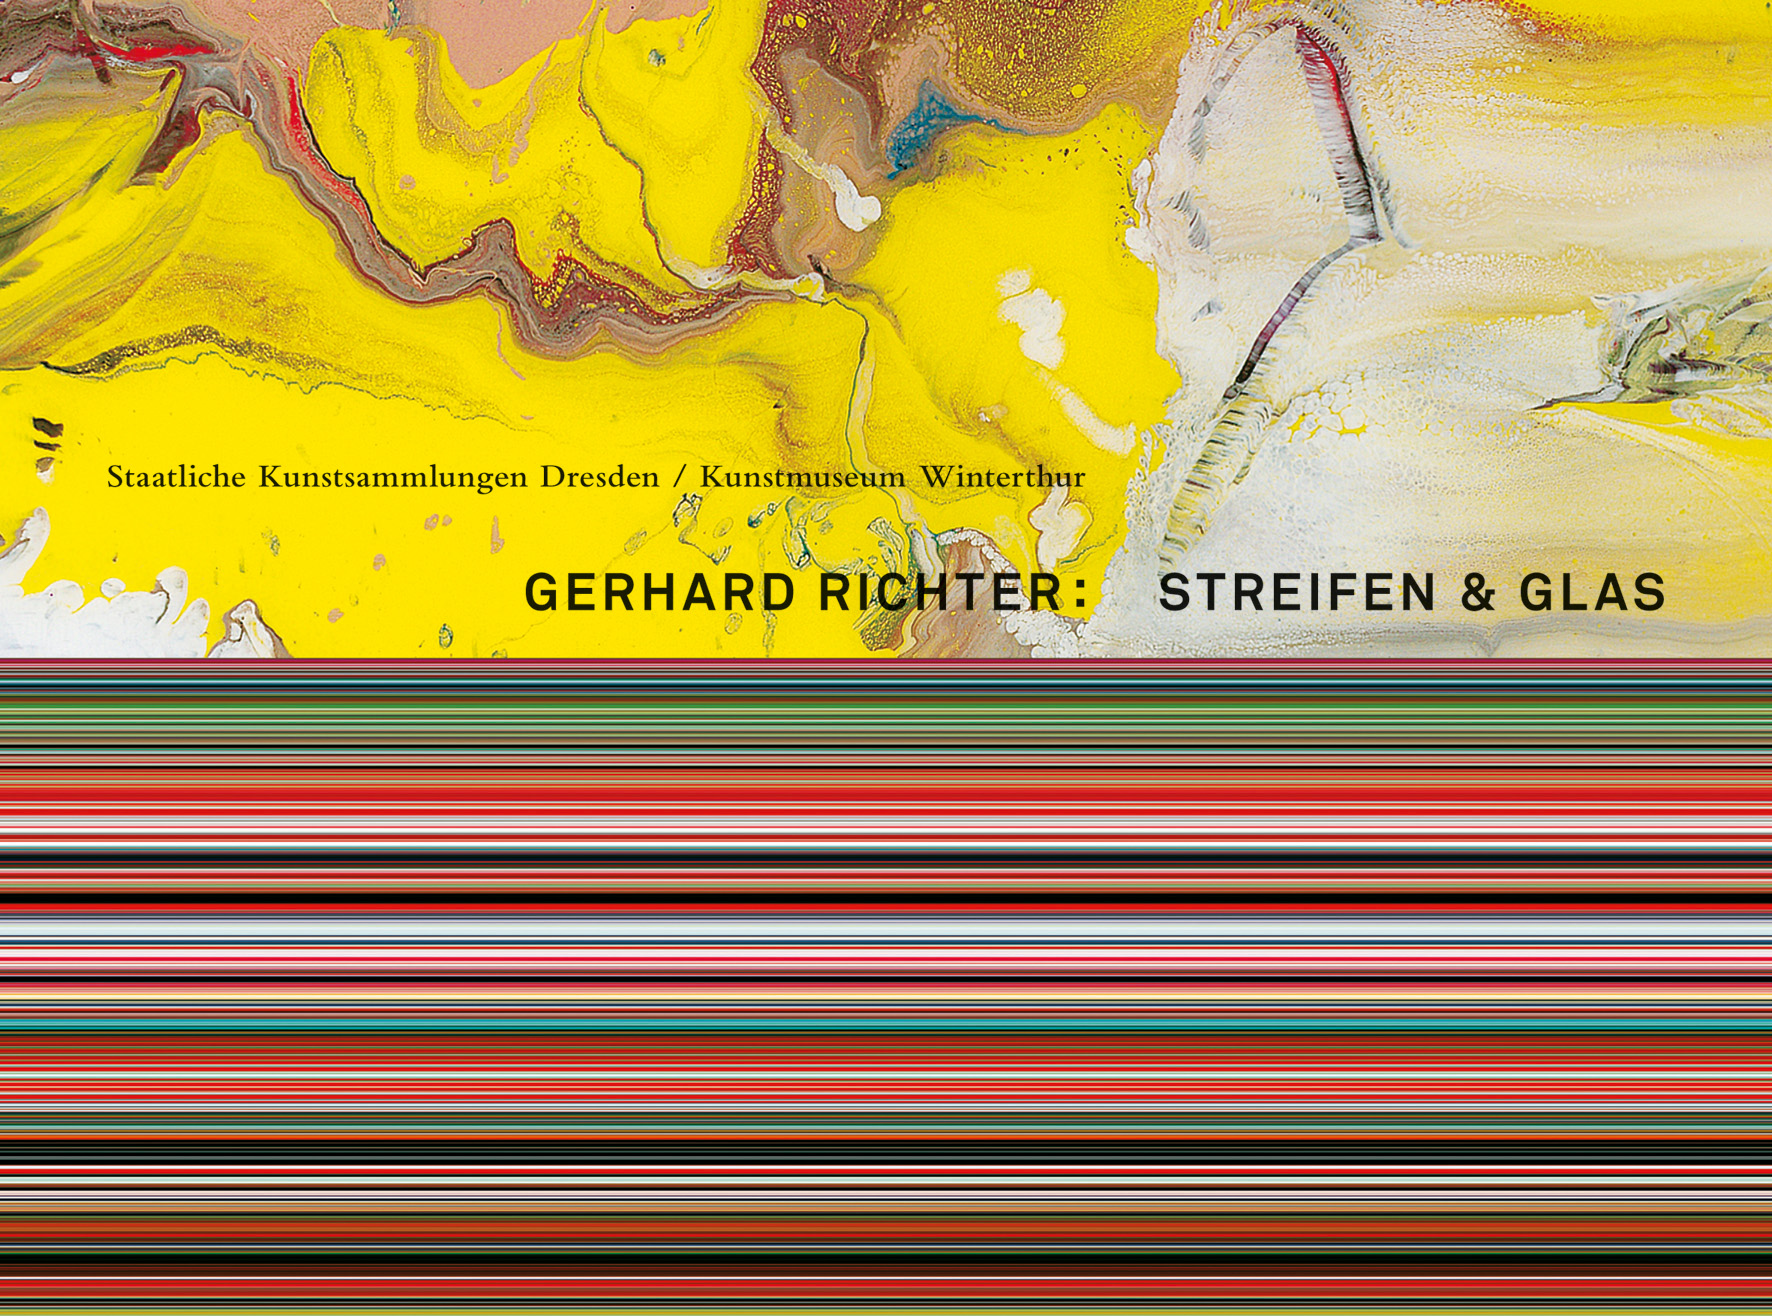 Gerhard Richter. Streifen & Glas